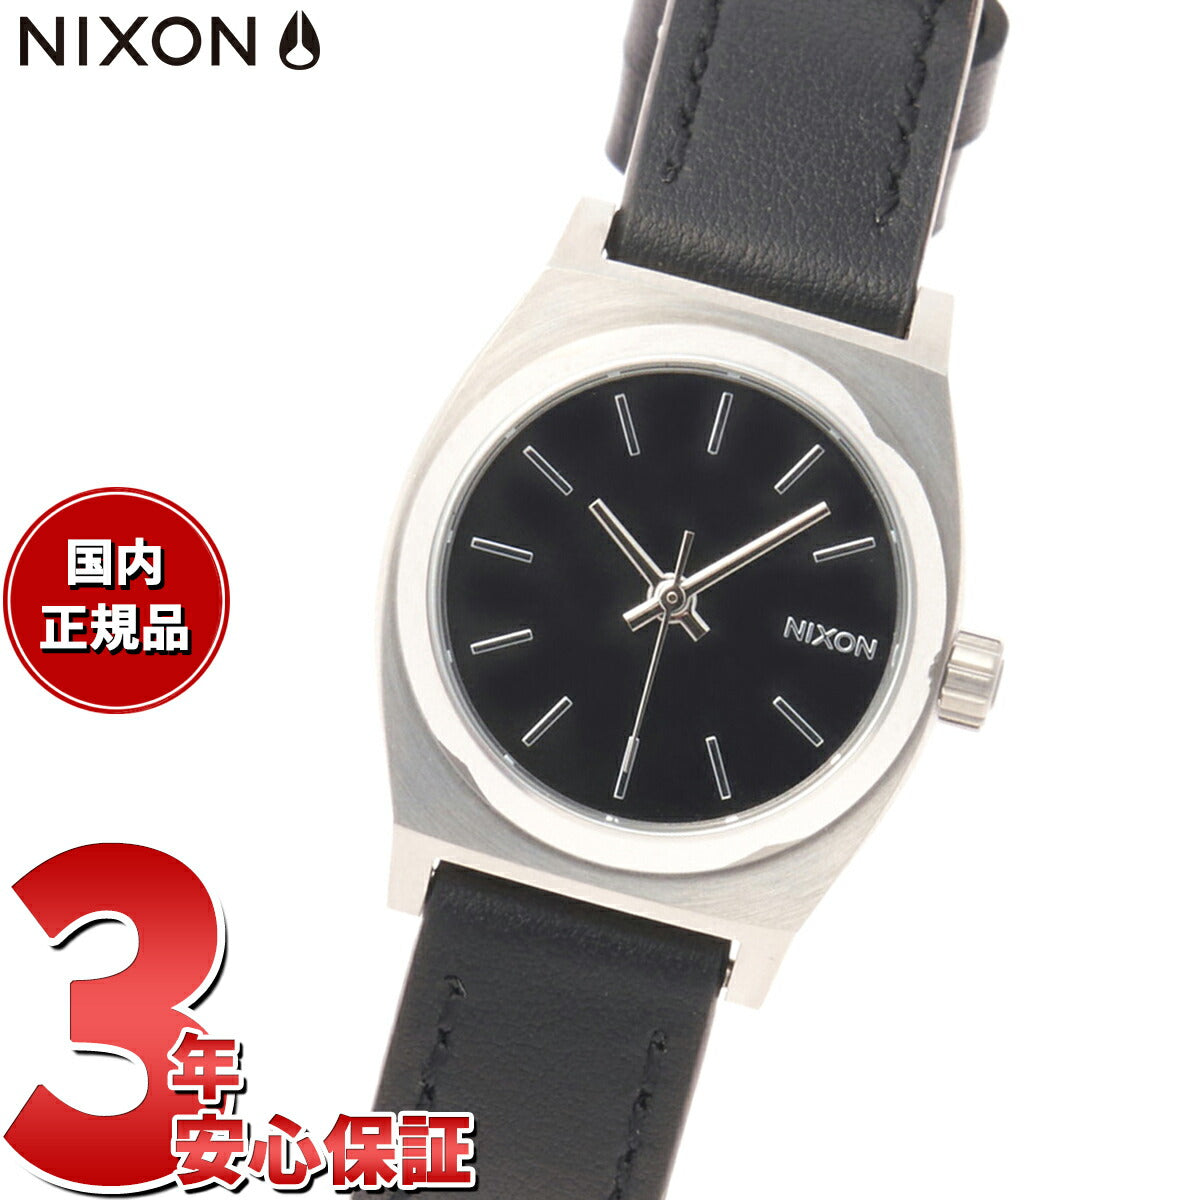 ニクソン NIXON スモールタイムテラーレザー Small Time Teller Leather 日本限定モデル 腕時計 レディース シルバー/ブラック A509625-00